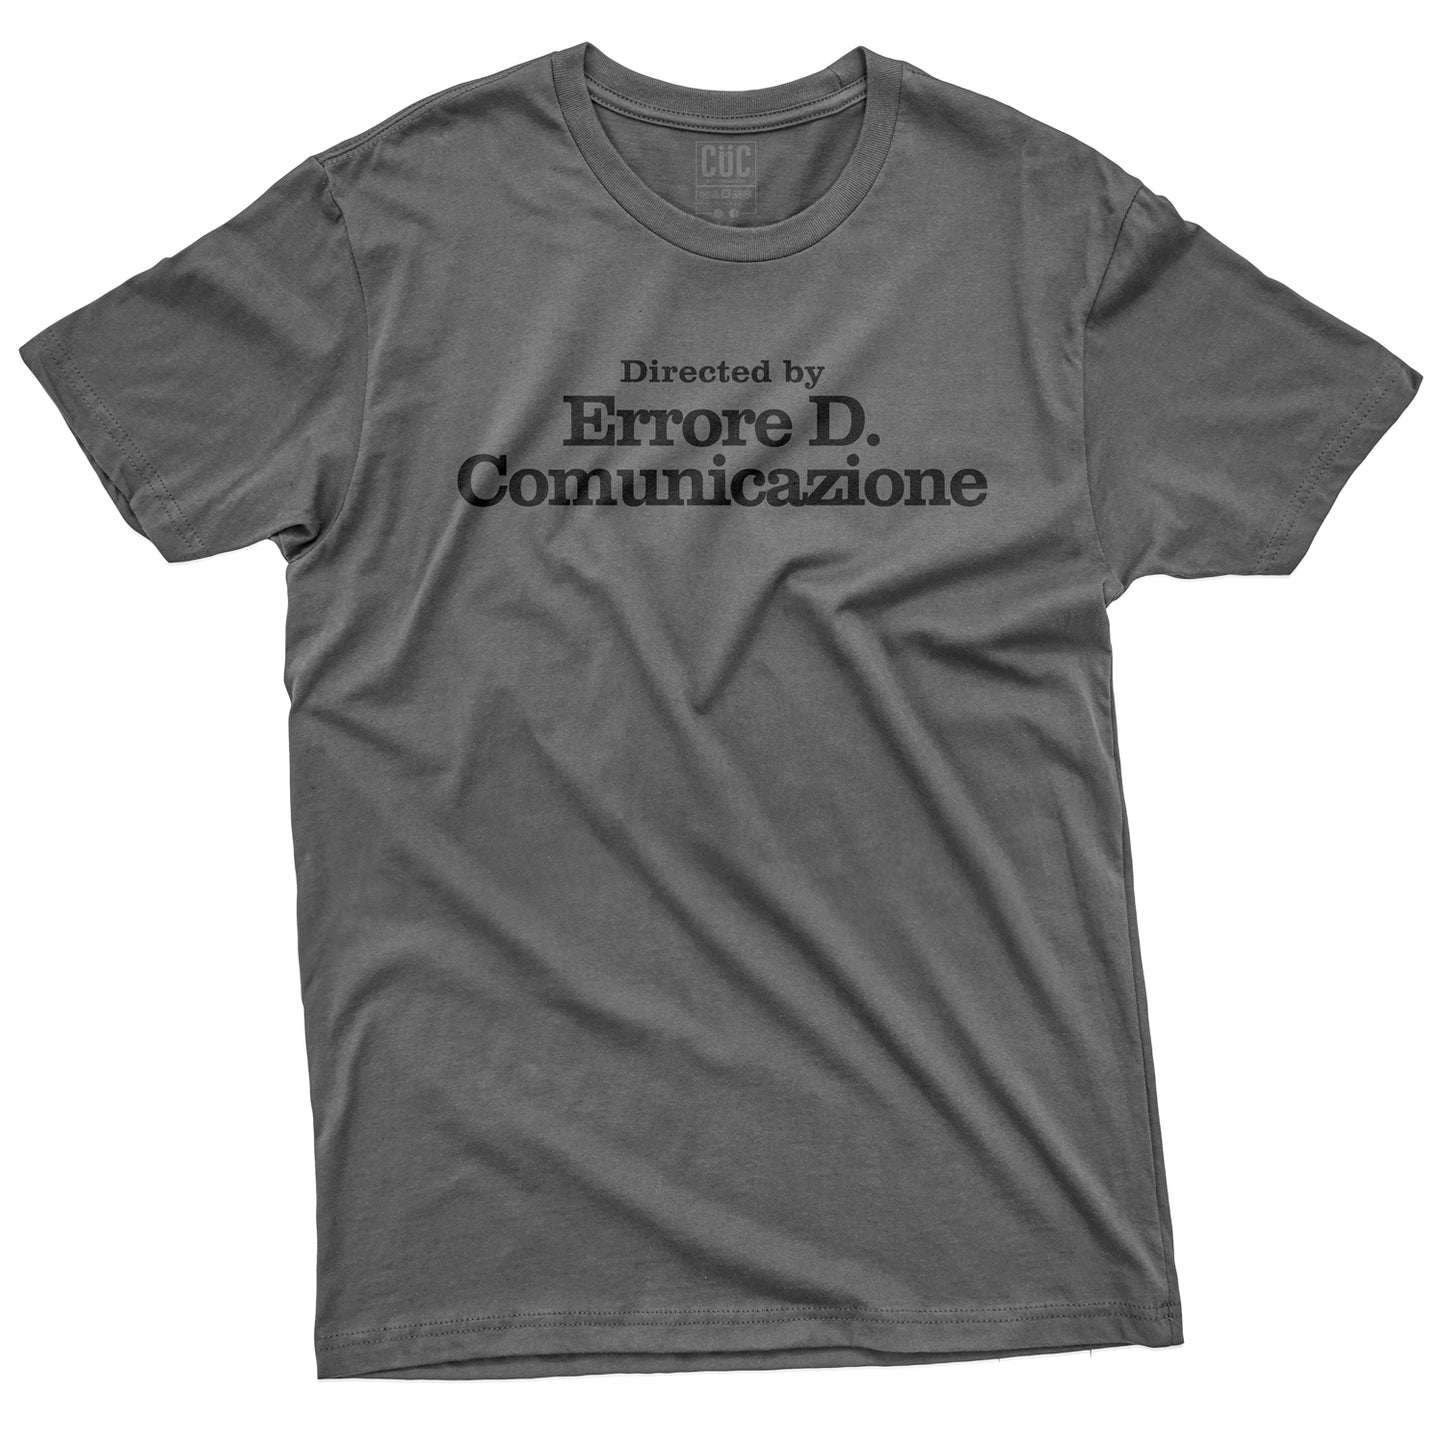 CUC T-Shirt ERRORE DI COMUNICAZIONE  #chooseurcolor